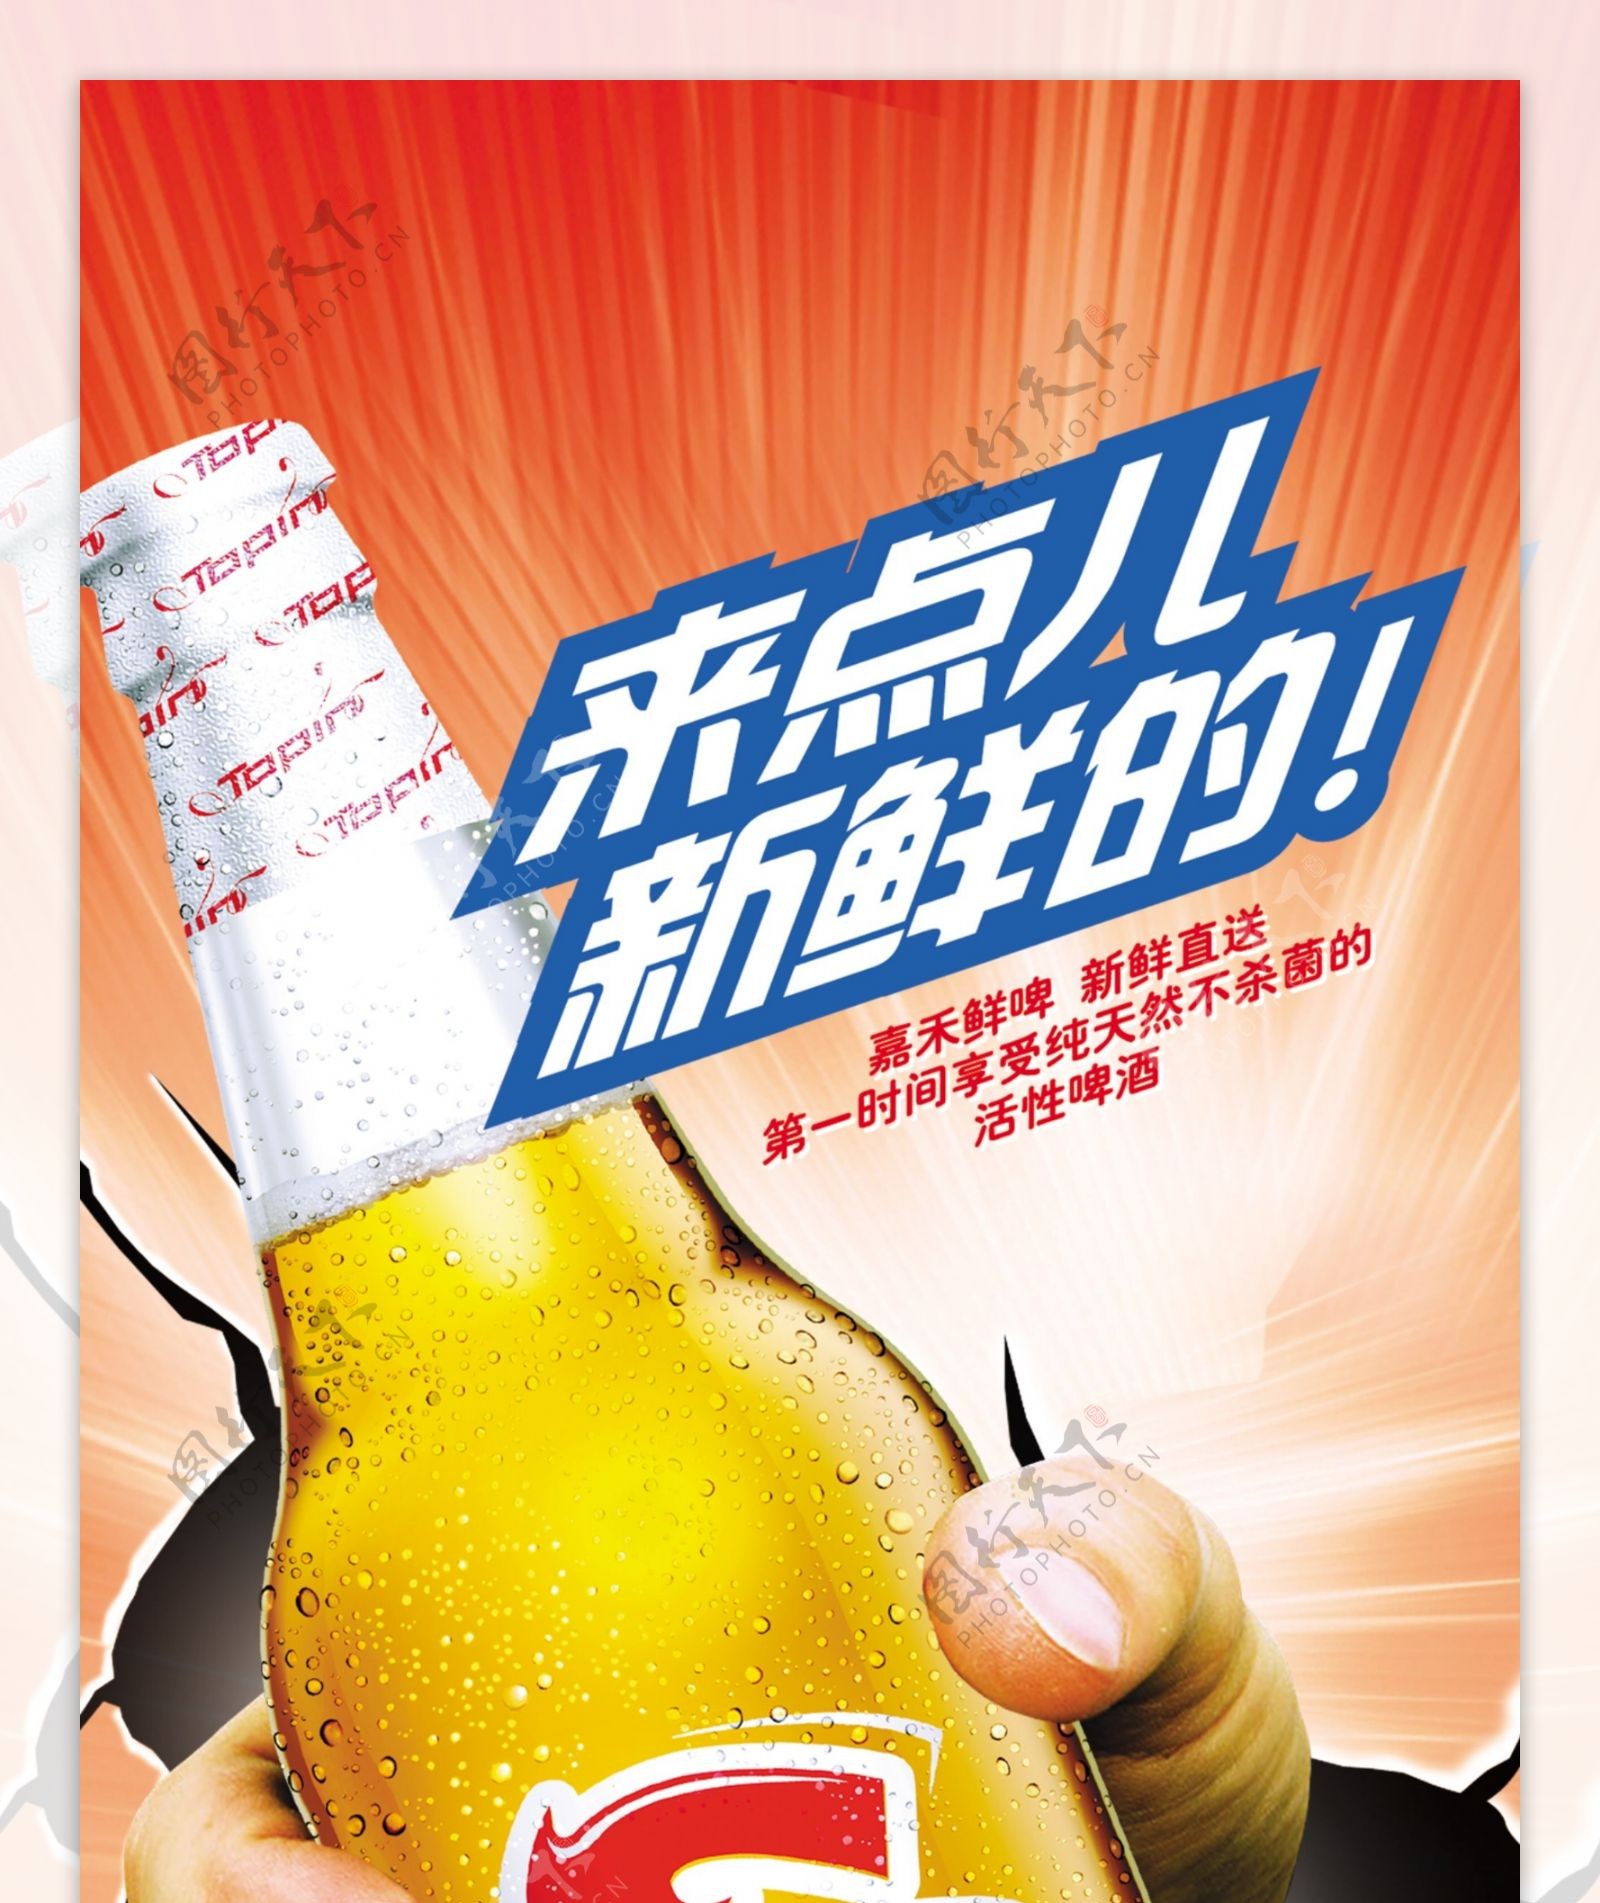 龙腾广告平面广告PSD分层素材源文件酒嘉禾啤酒手